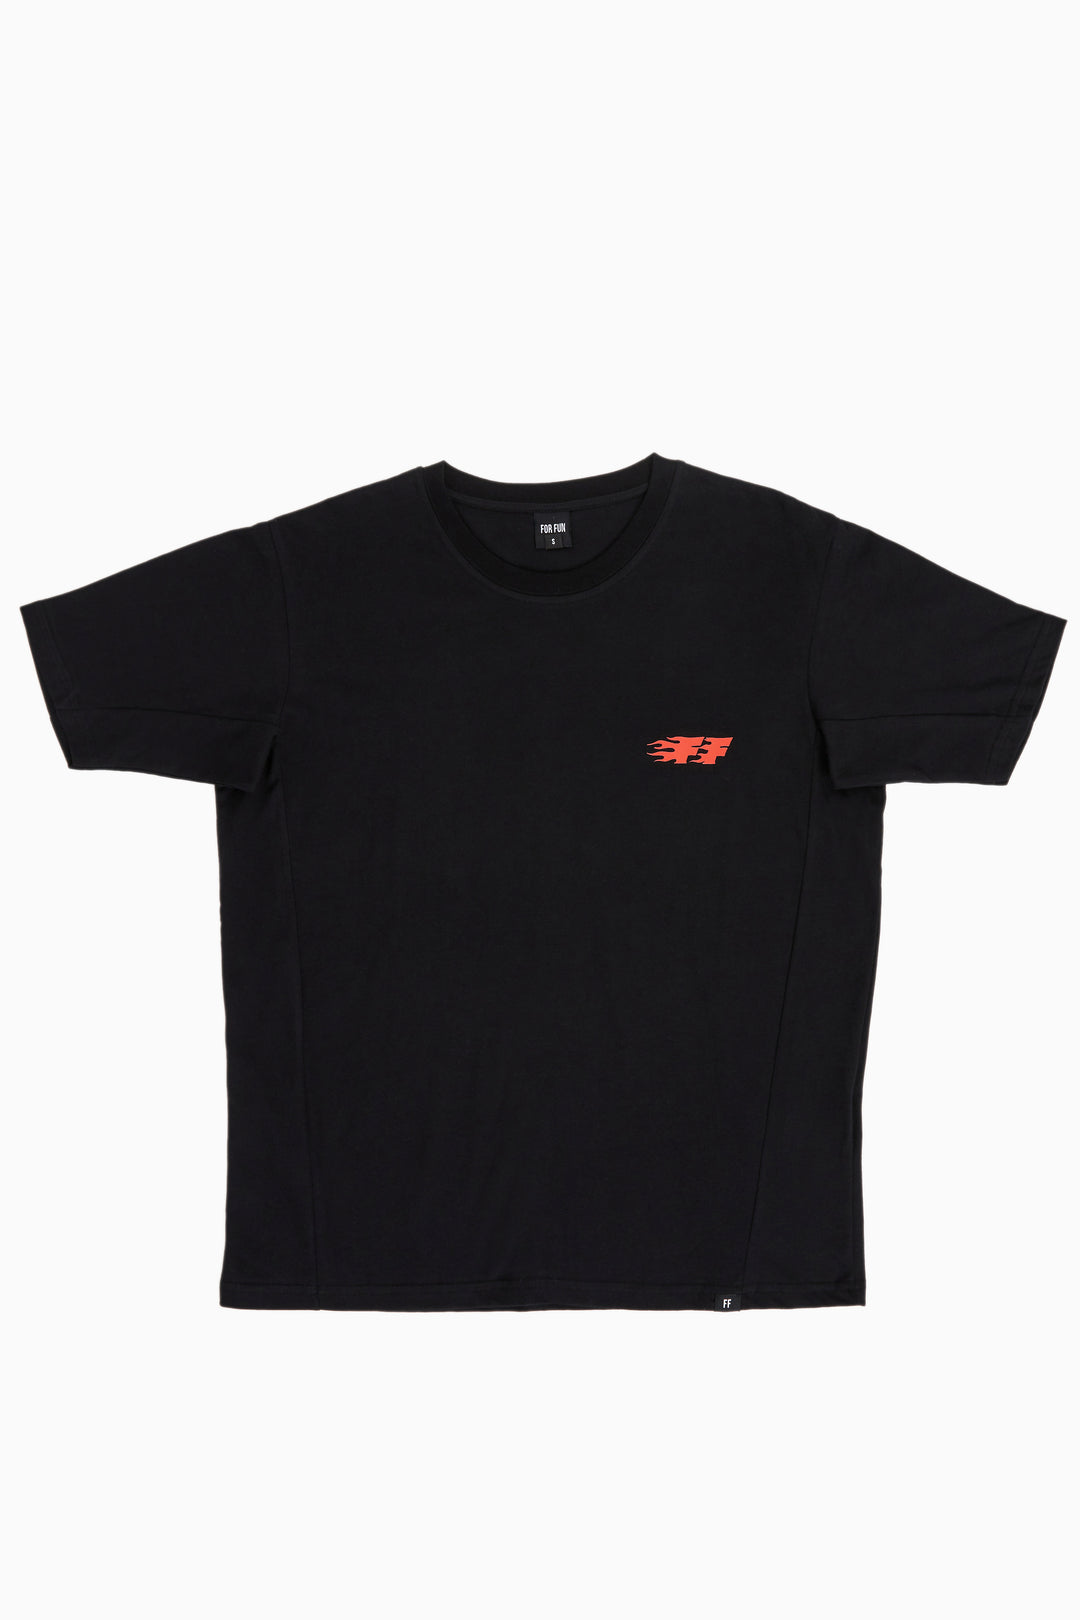 FF Feuerball / Oversize T-shirt